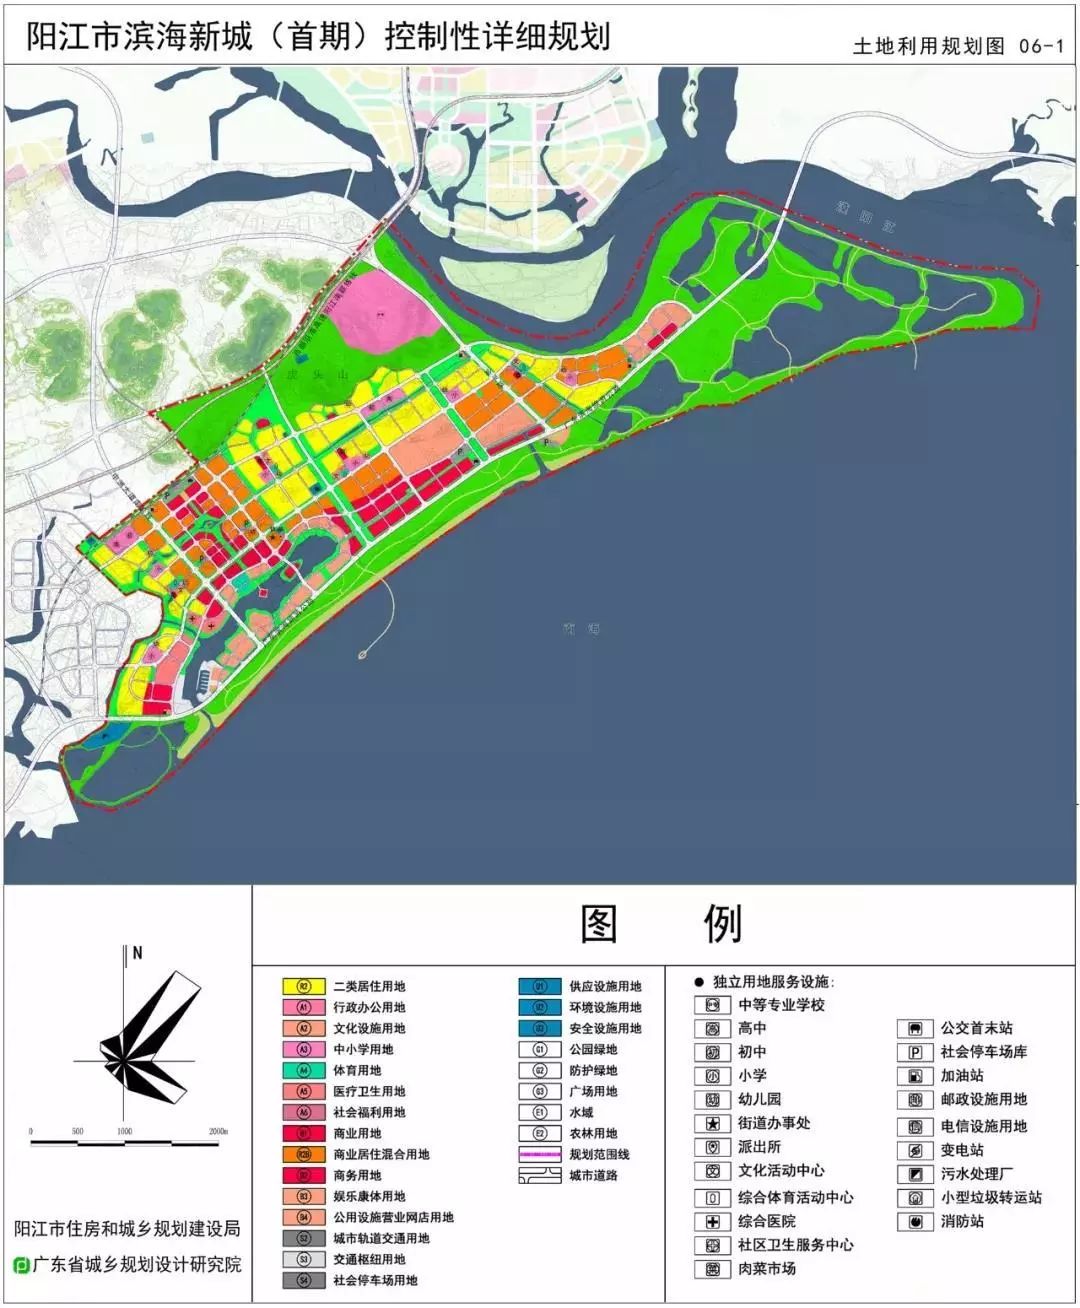 在建设城南新城中,以规划建设高铁商务集聚区为契机,着力打造滨海